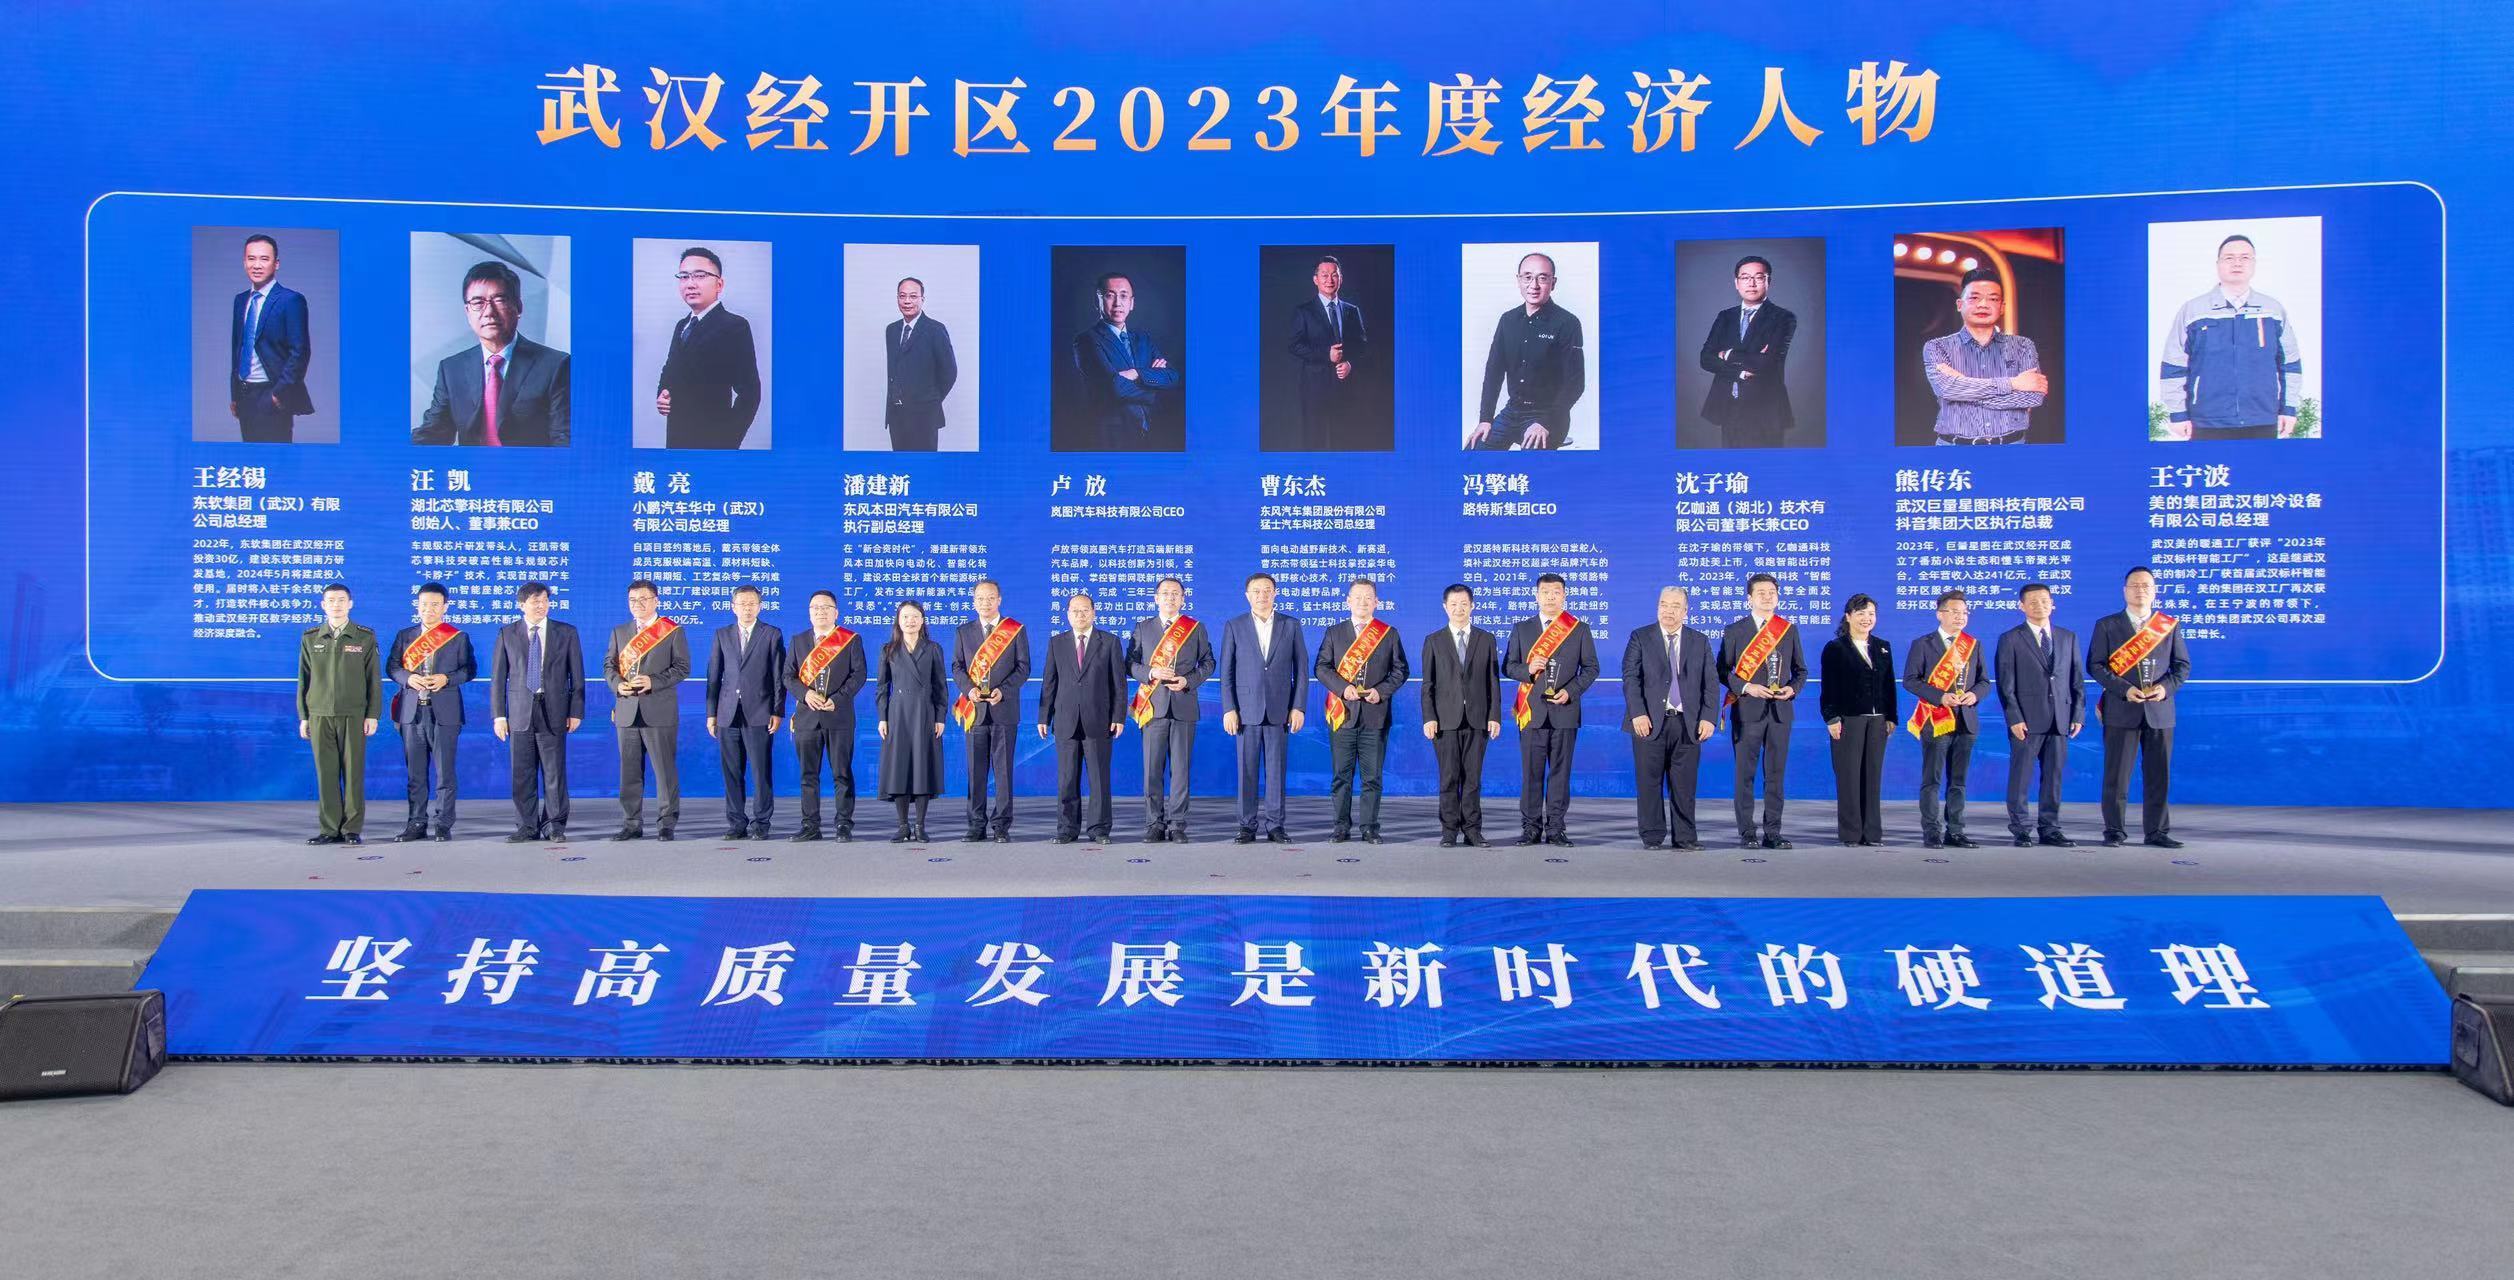 弘扬企业家精神 致敬“奋斗者”们 中国车谷20位优秀企业家获颁“2023年度经济人物”